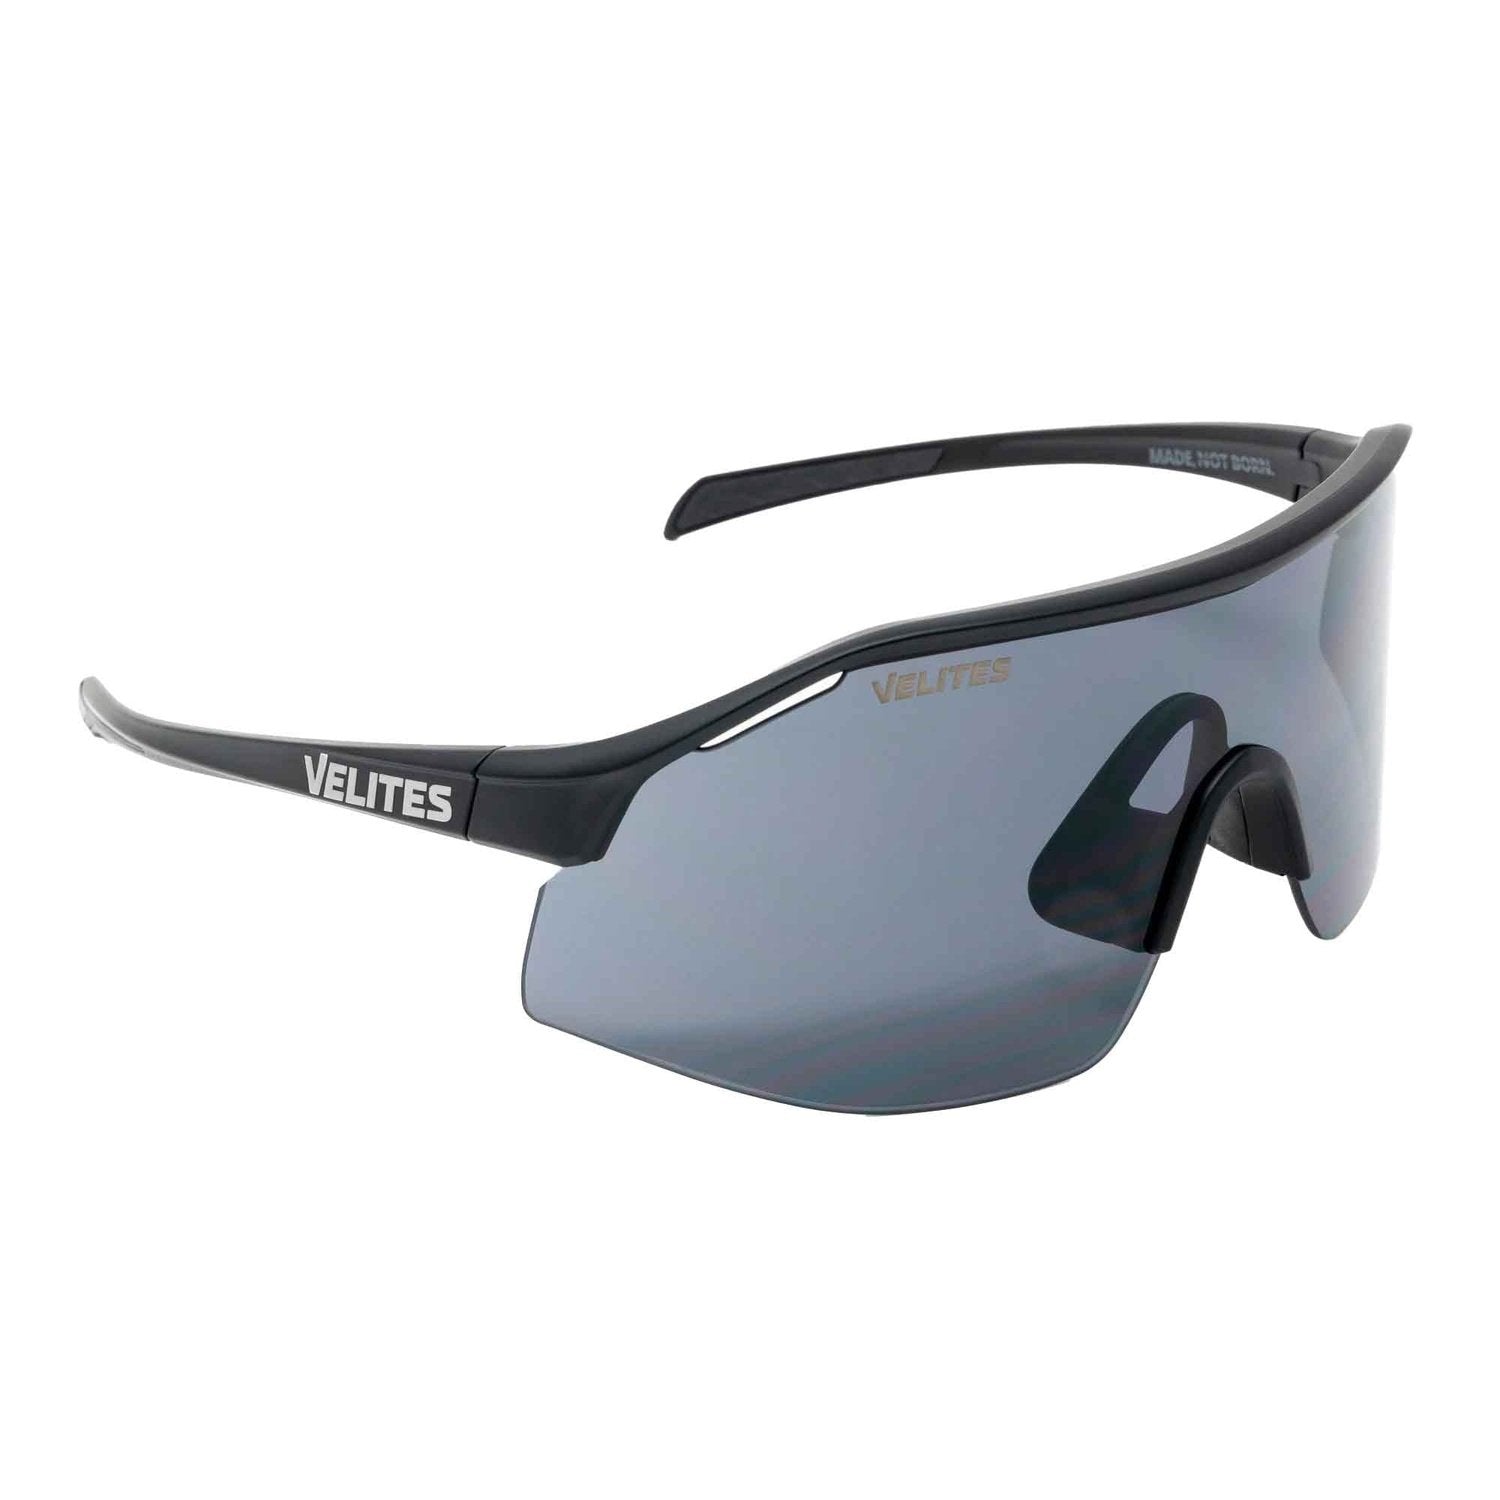 Velites Sonnenbrille "Raptor Sport" Schwarz Grau kaufen bei HighPowered.ch